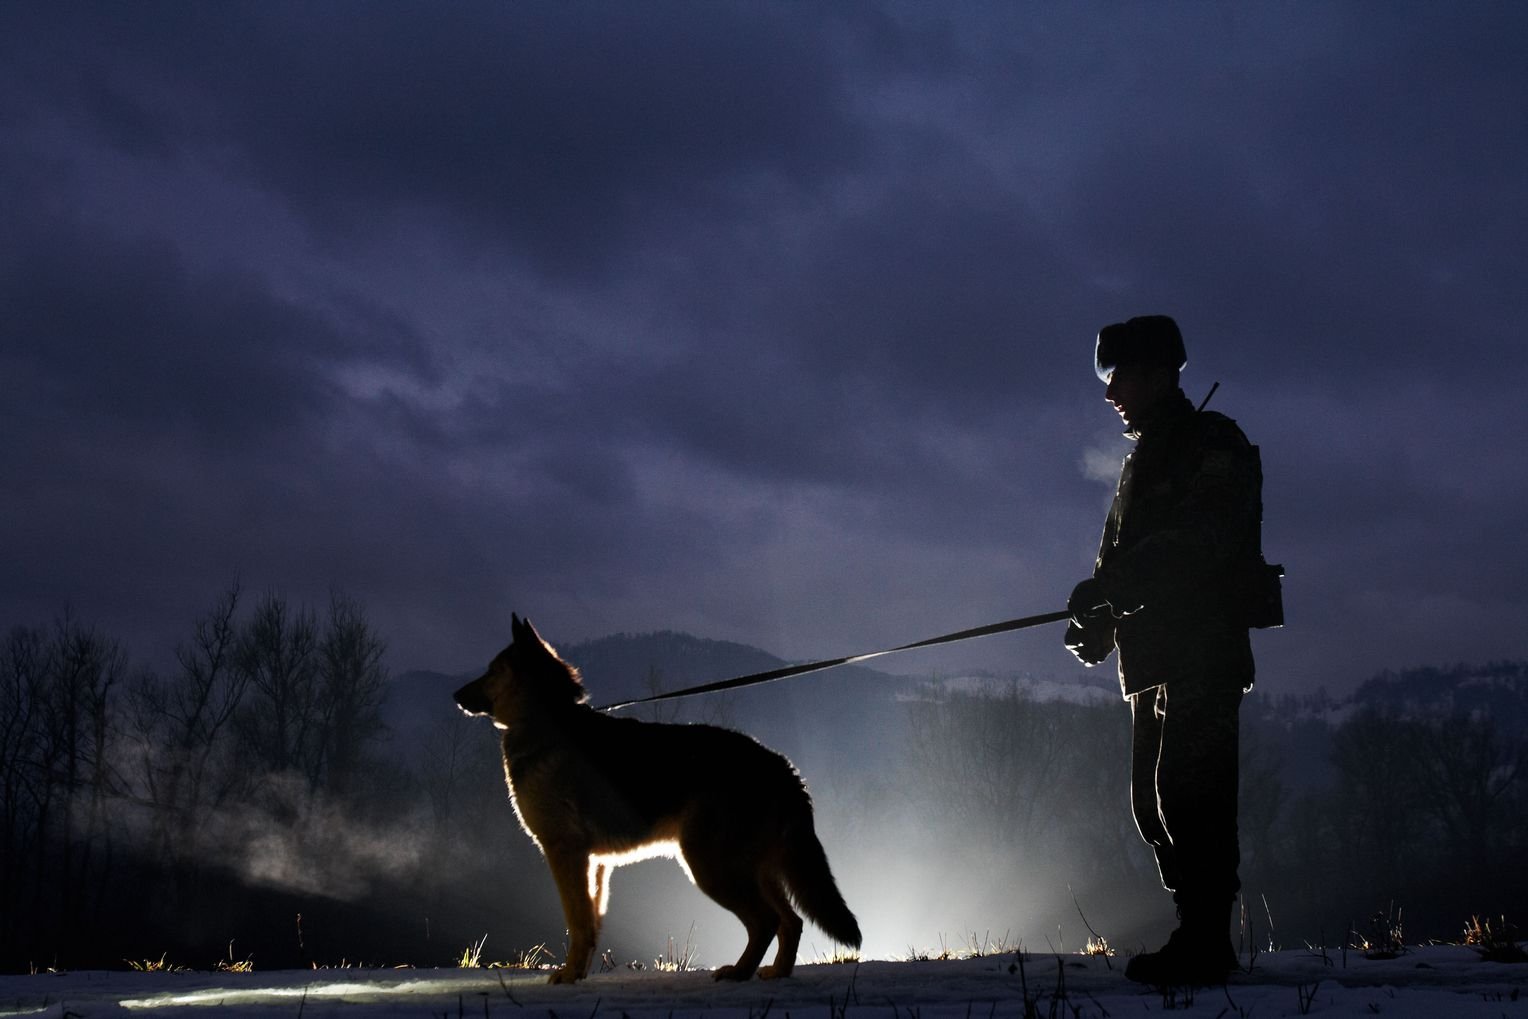 Фото пограничника с собакой на границе